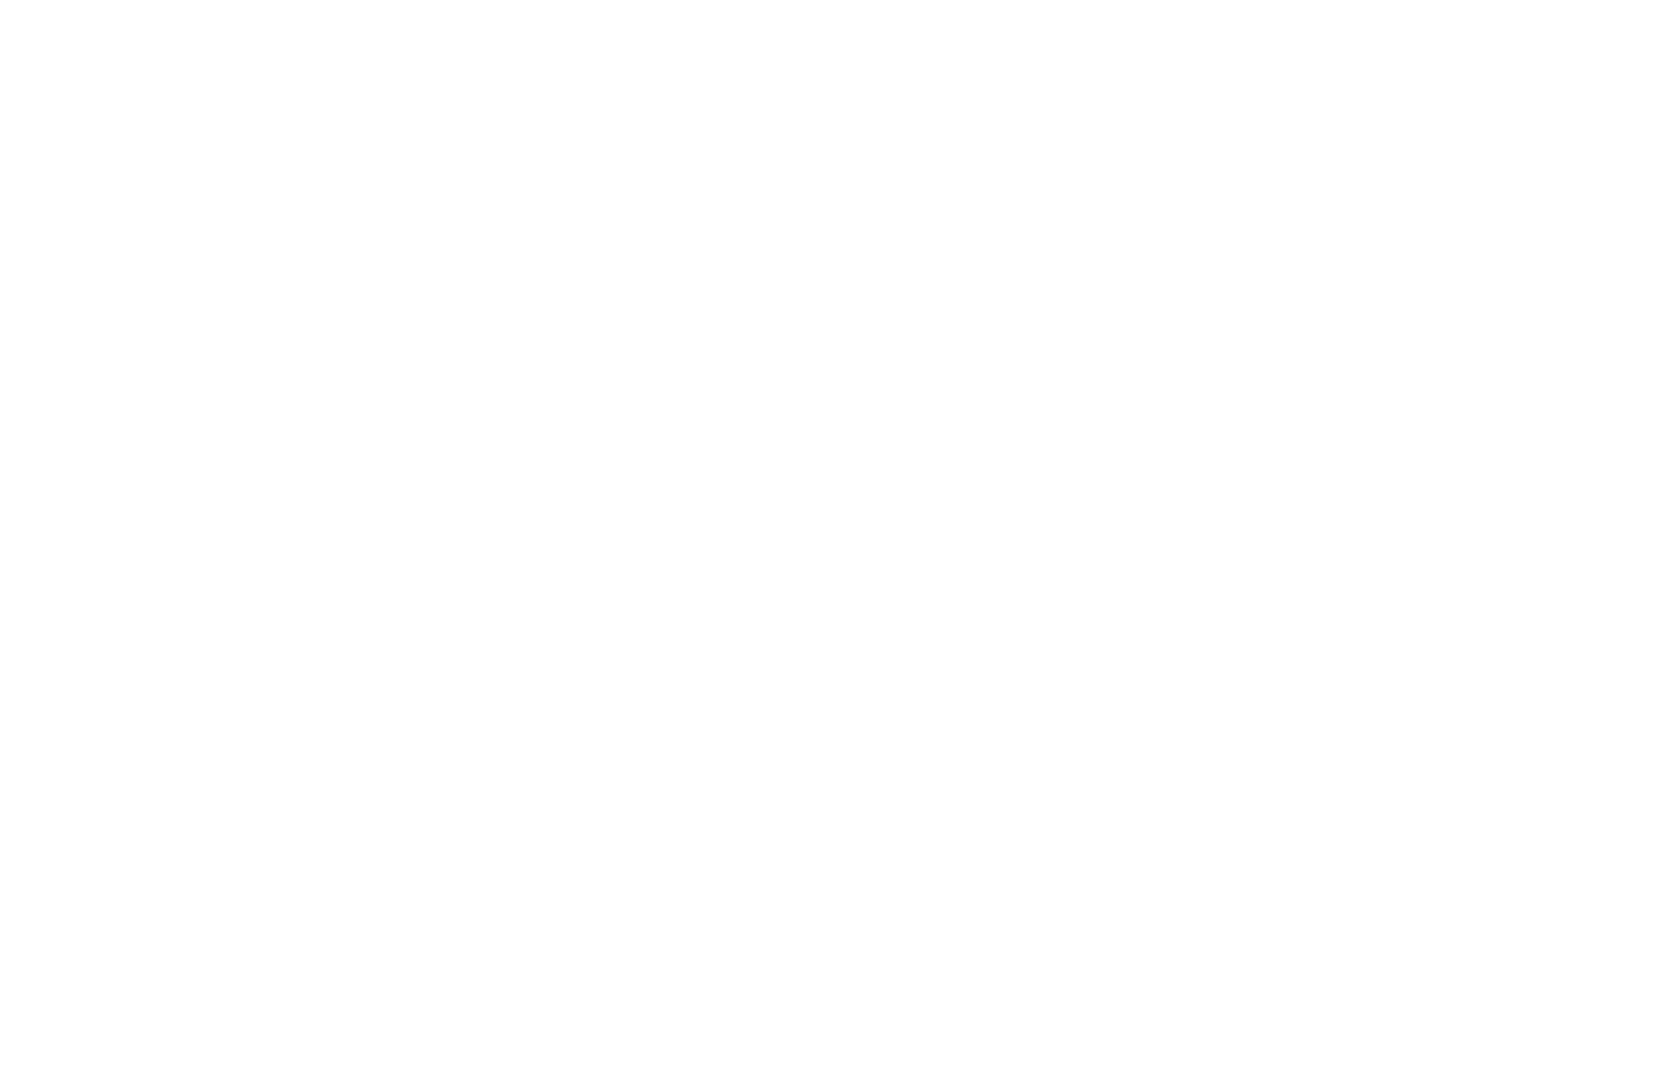 Этикетка для рыбы Океан ТРК с логотипом, крупная рыба - вид сверху | Джекил и Хайд